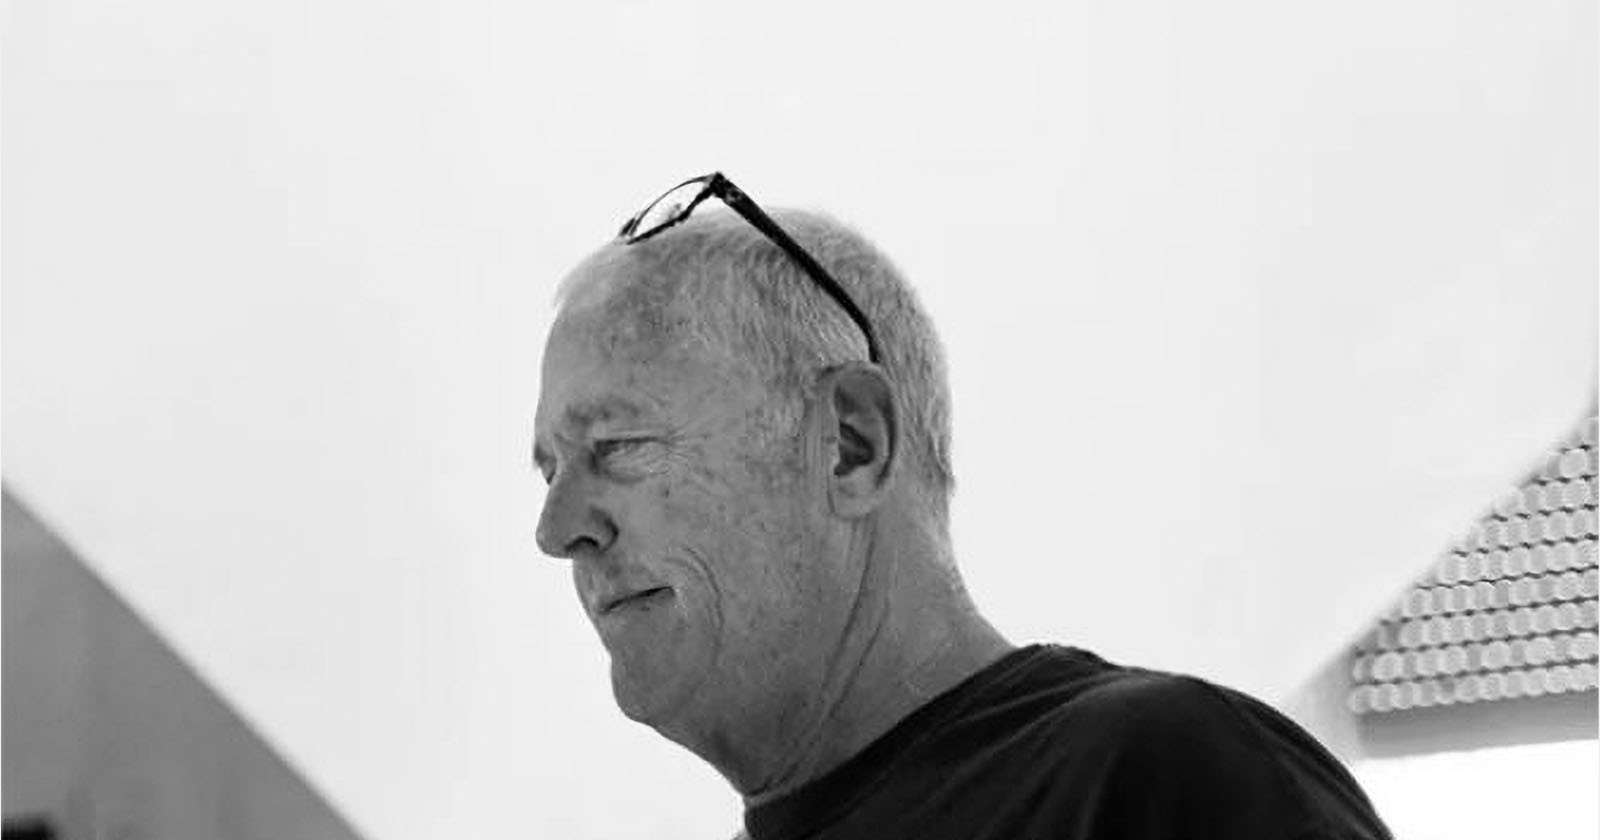  legendary surf photographer art brewer has died 